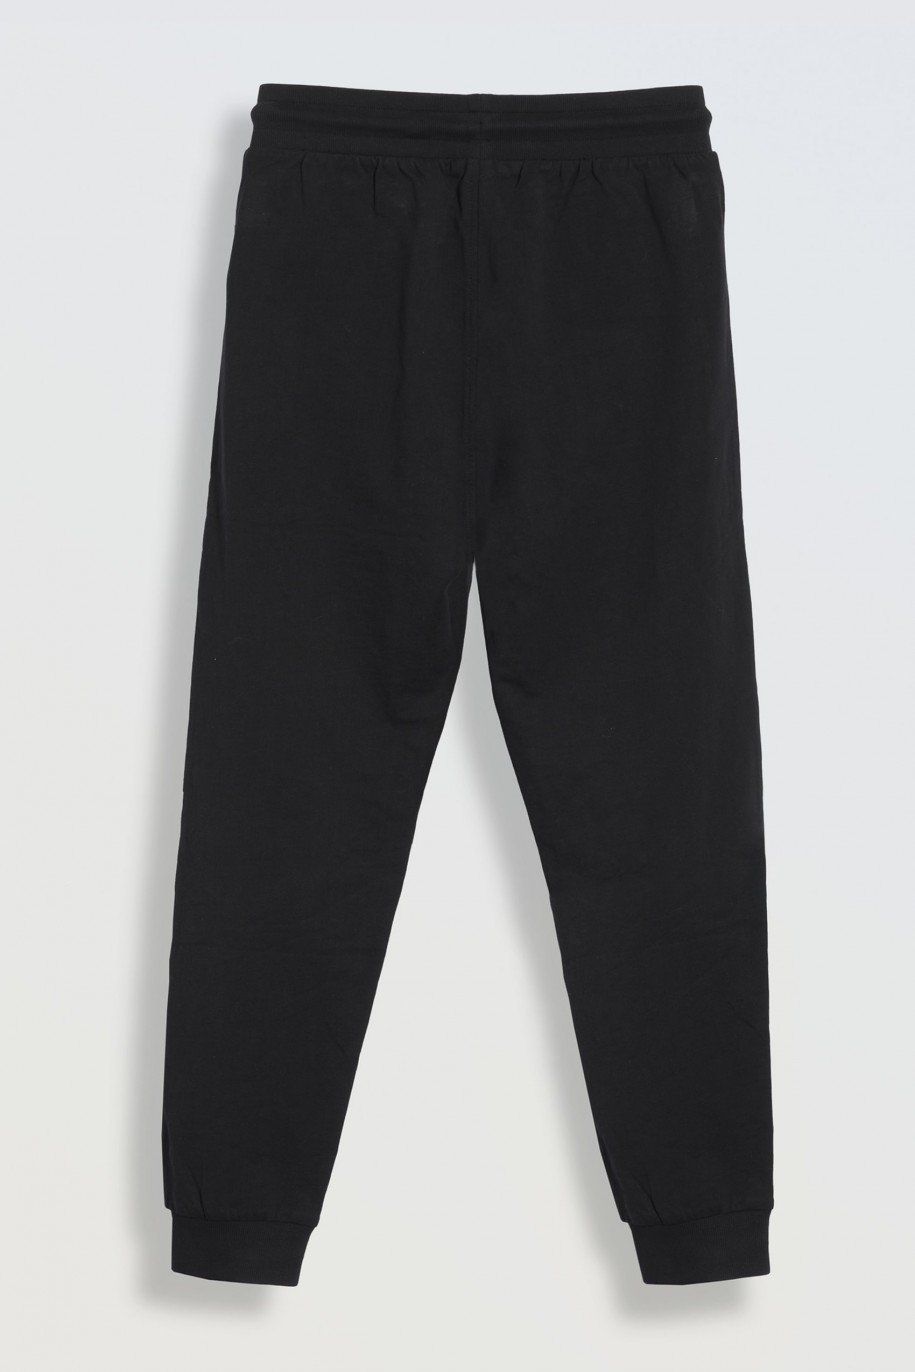 Czarne spodnie dresowe z kieszeniami zapinanymi na zamek - 46260